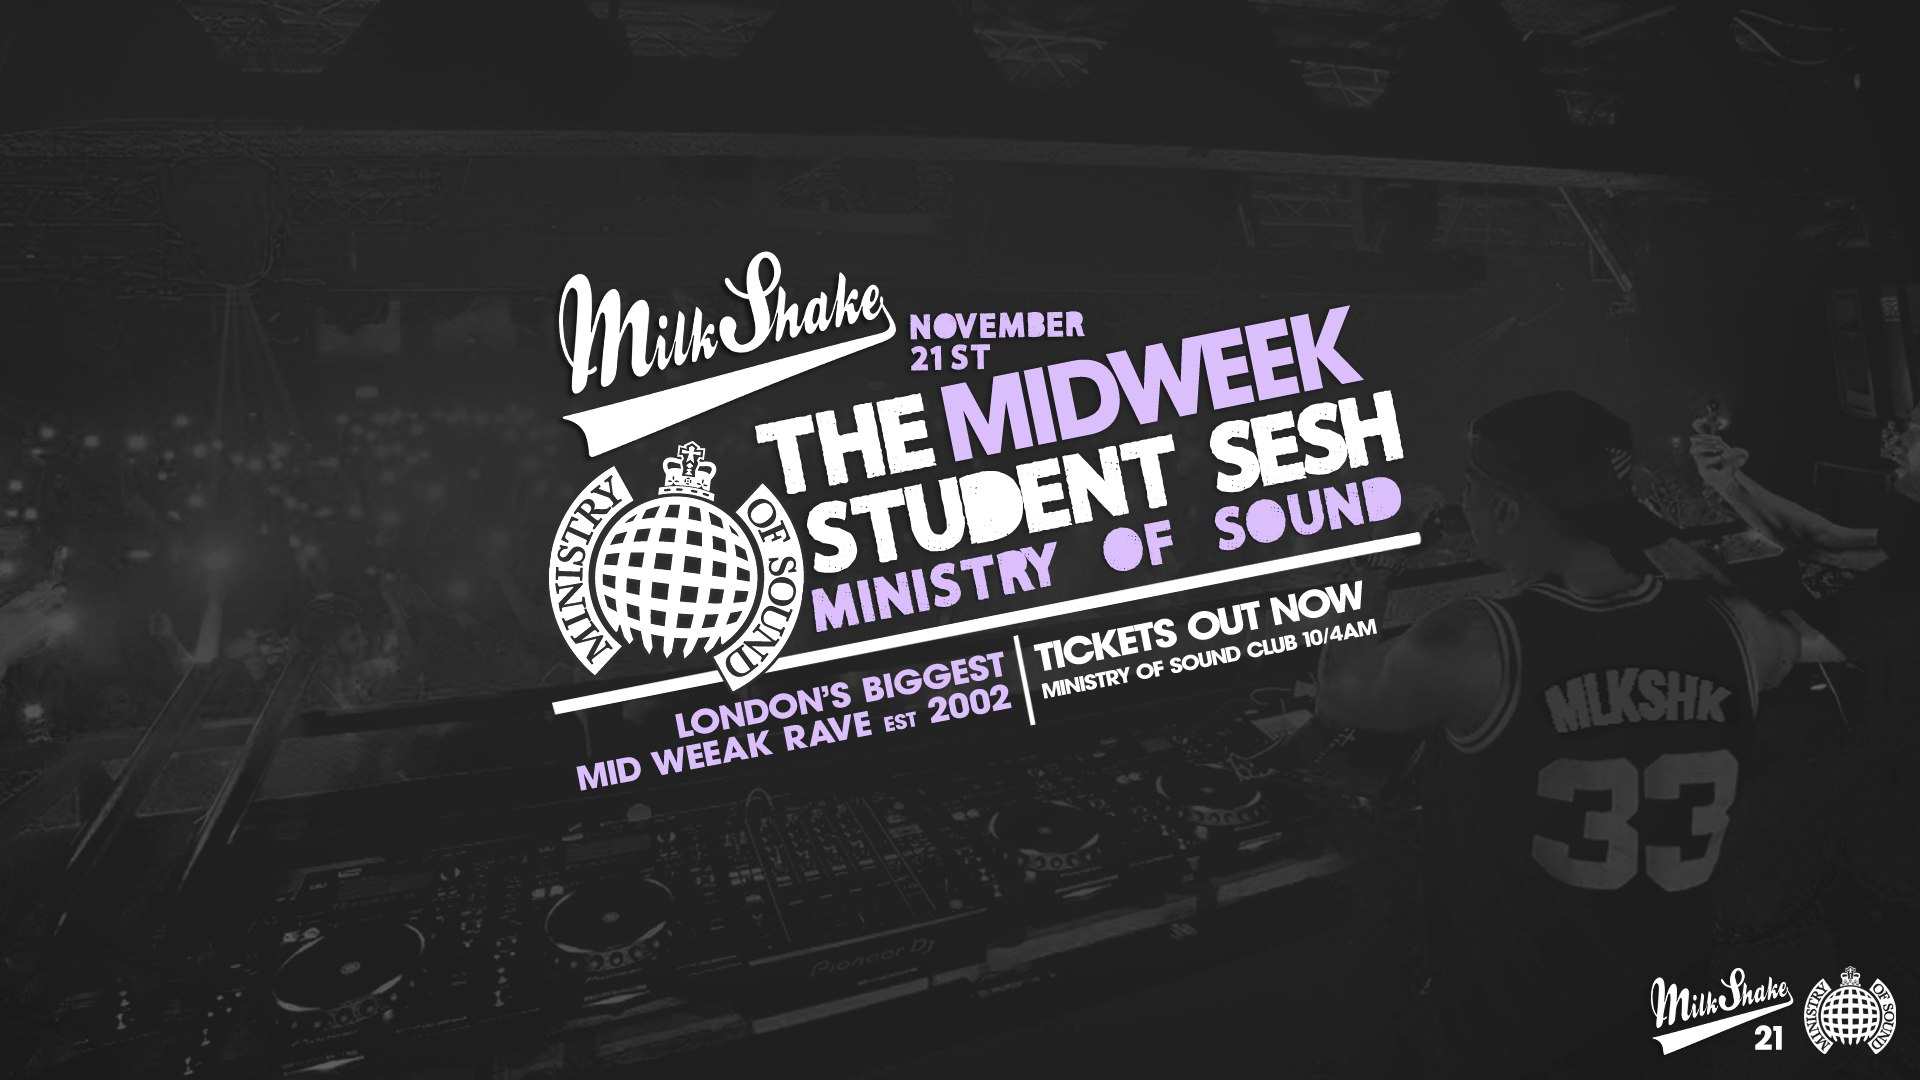 Milkshake, Ministry of Sound | London’s Biggest Student Night 🔥Nov 21st 🌍